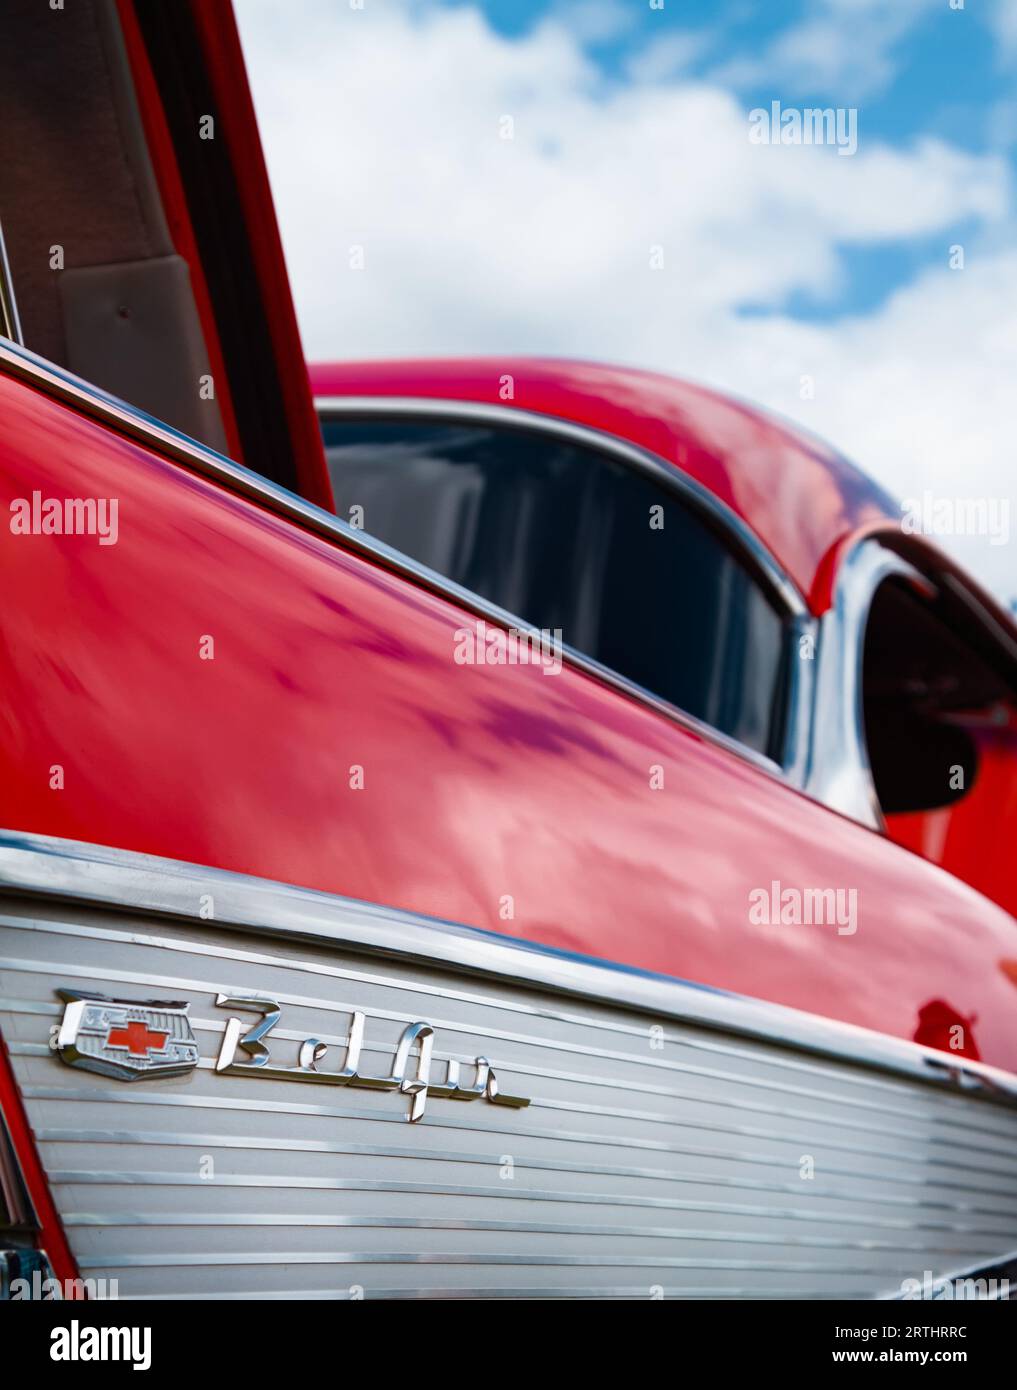 Écusson et emblème sur l'aile arrière d'Une Chevrolet Bel Air coupé American automobile car, Angleterre, Royaume-Uni, années 1950 Banque D'Images